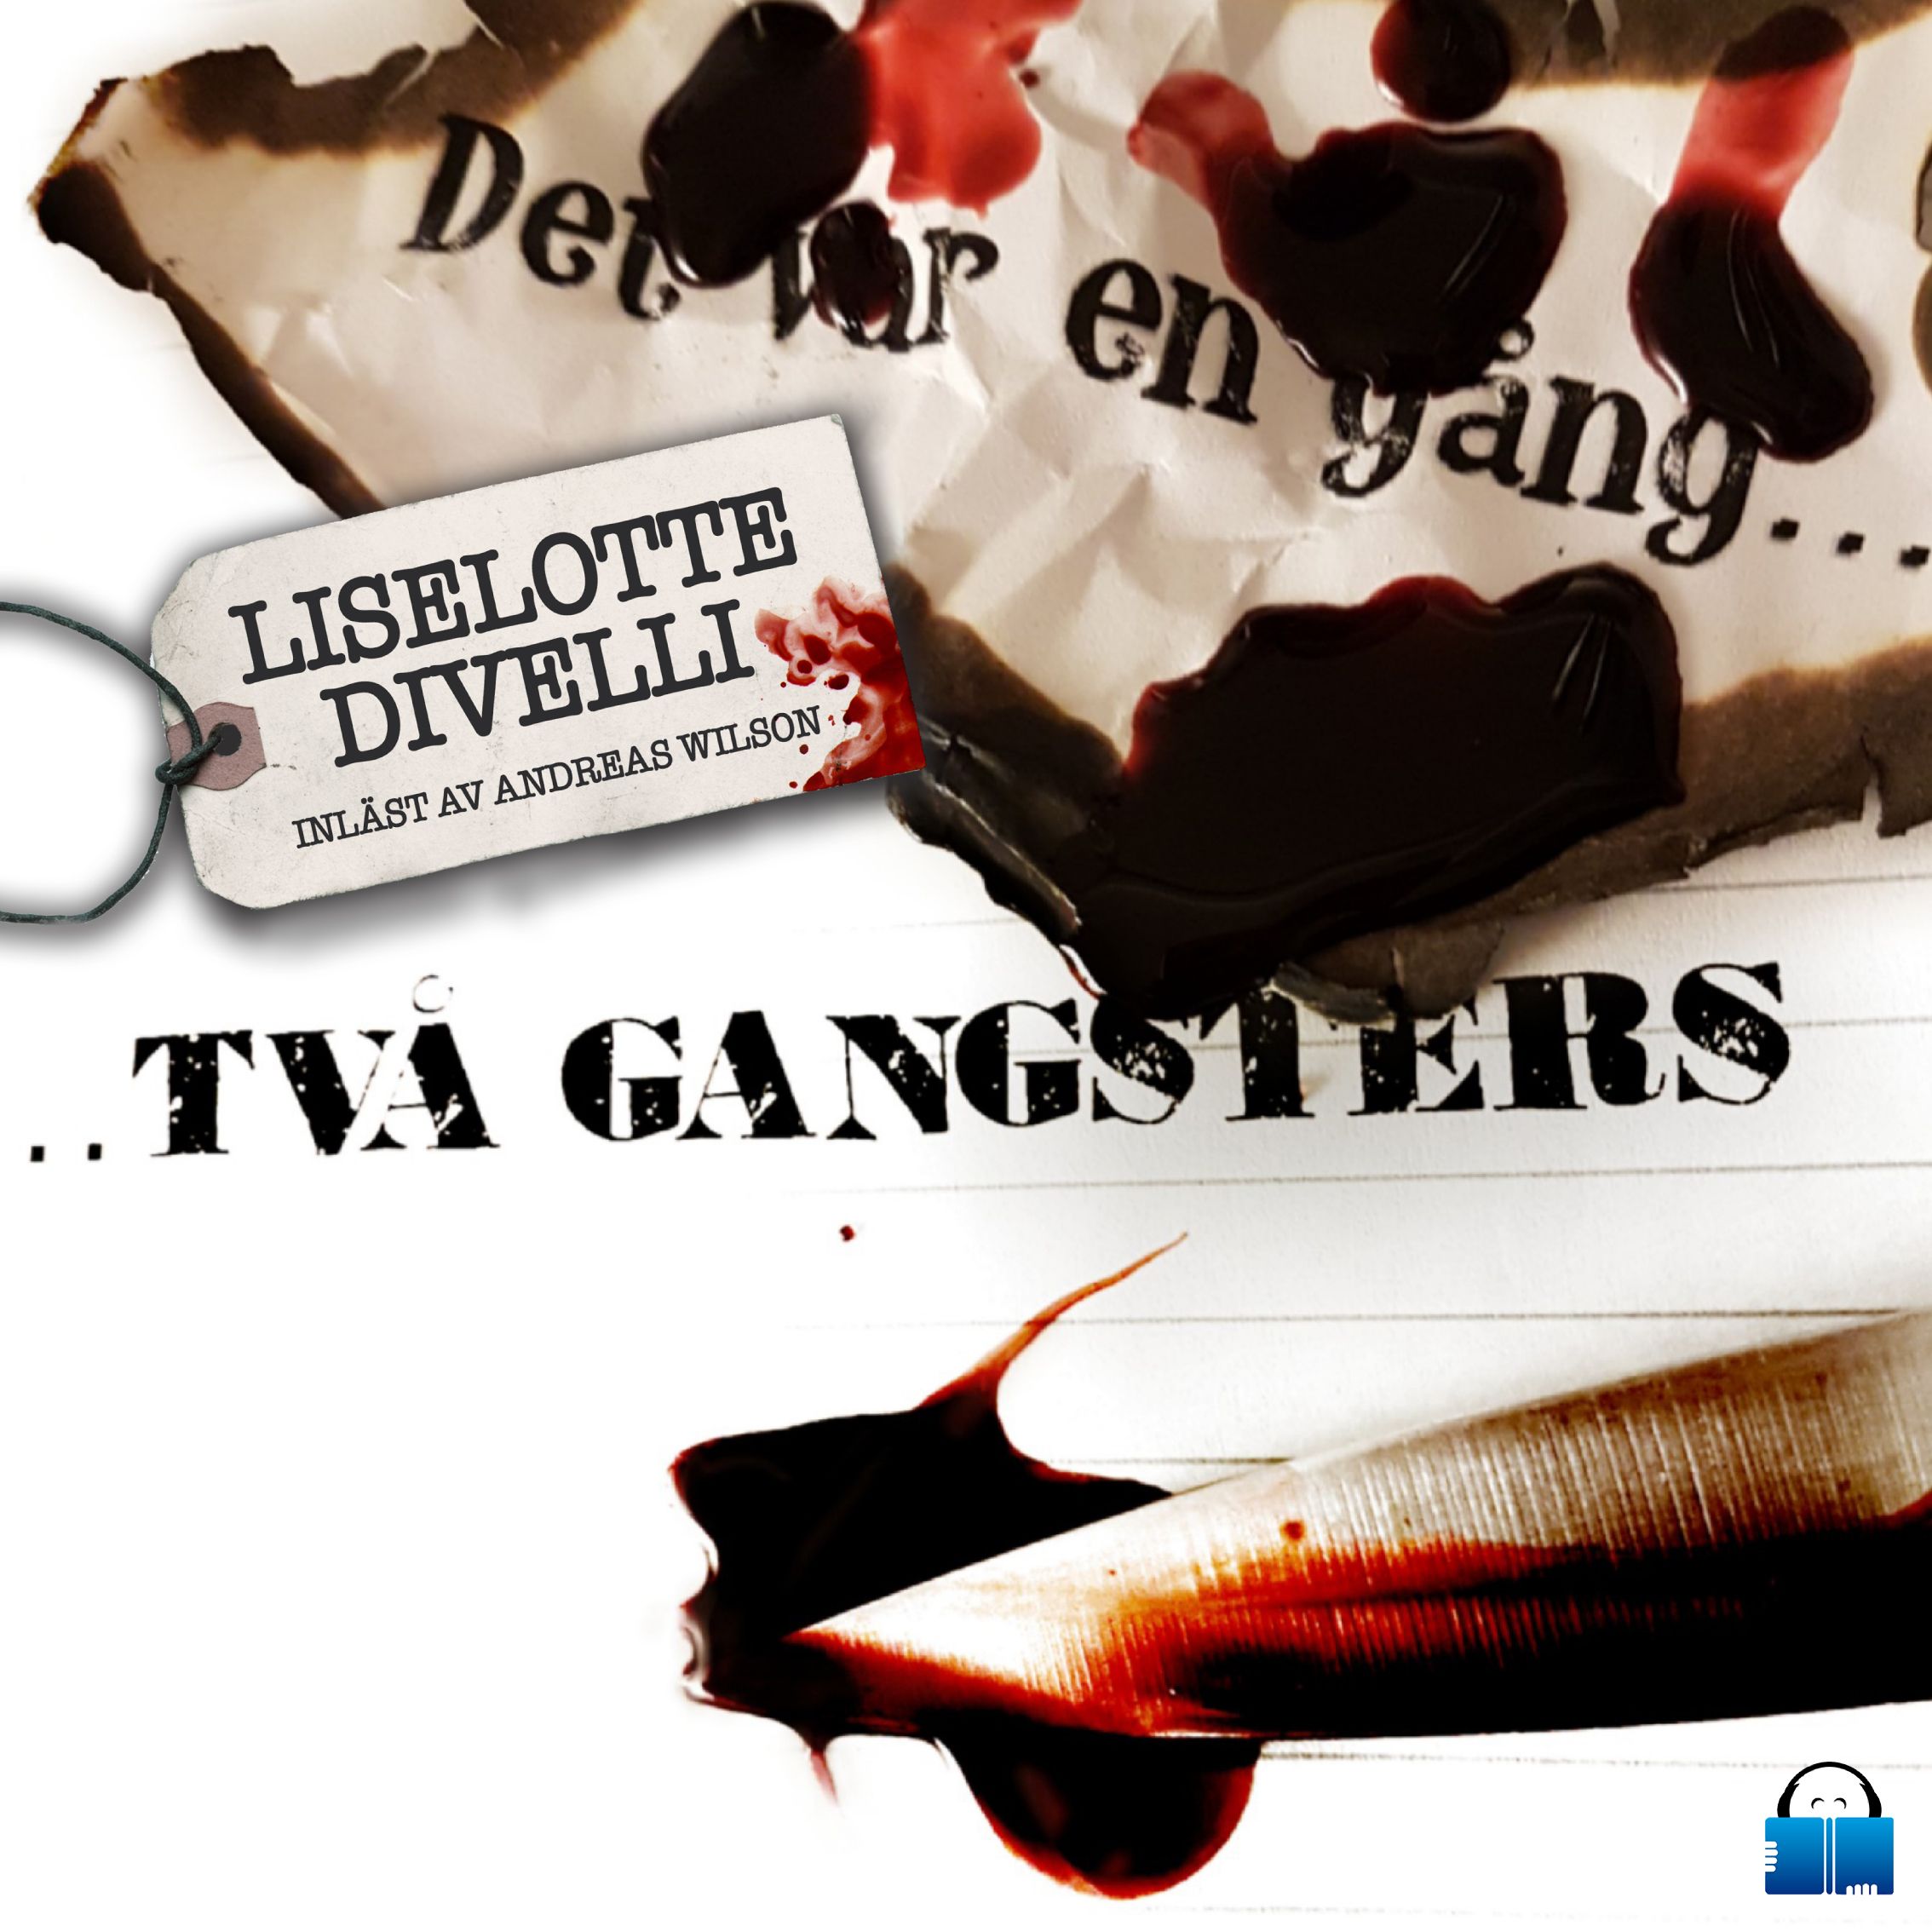 Det var en gång två gangsters, audiobook by Liselotte Divelli